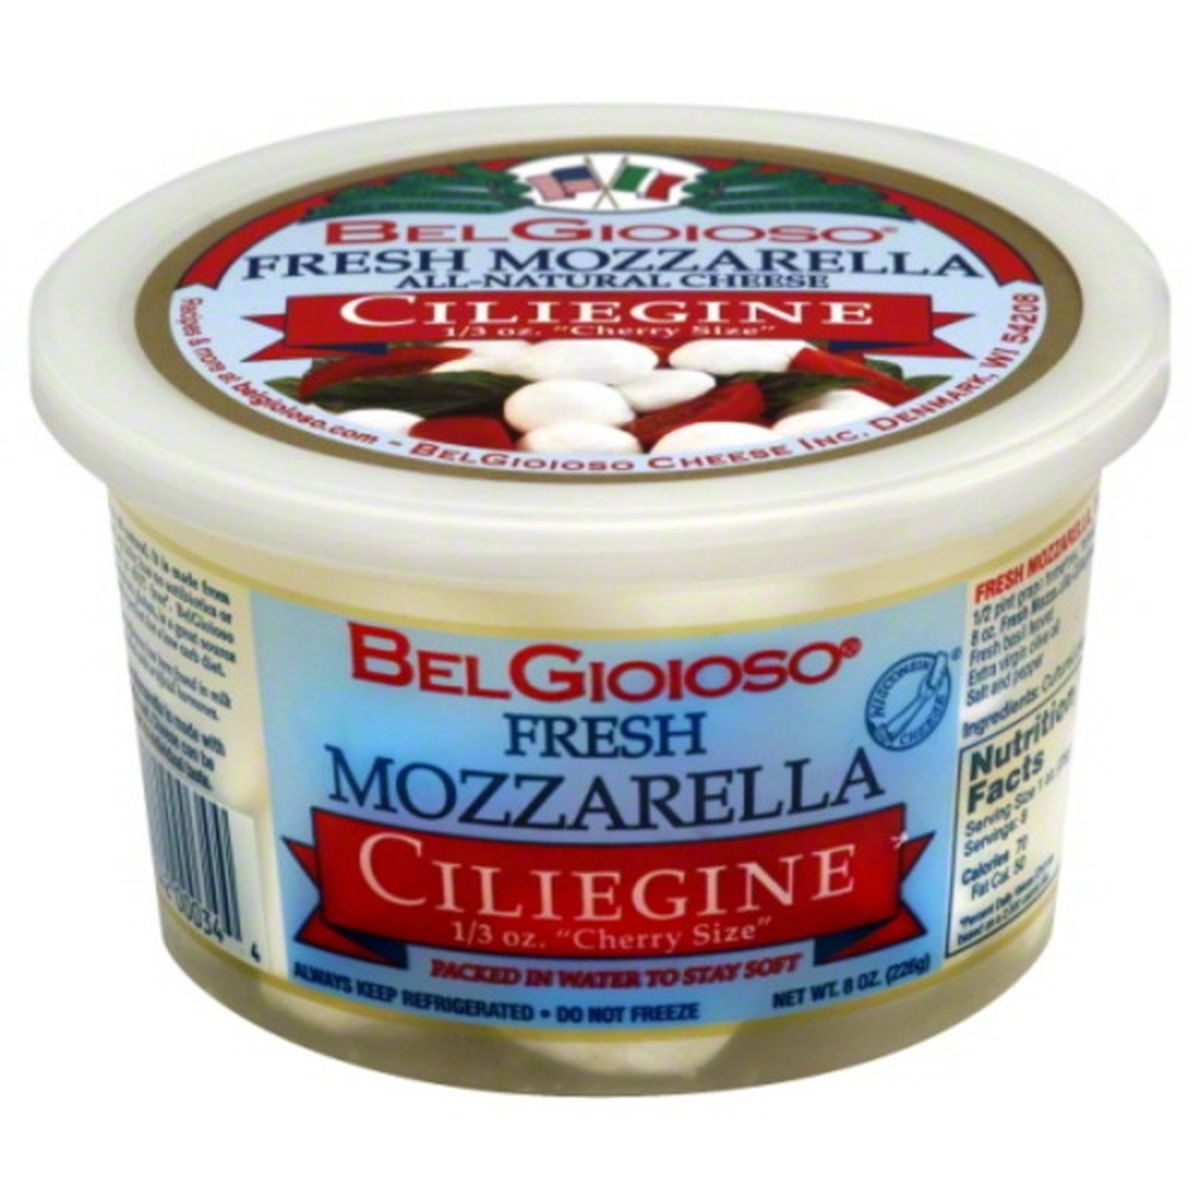 Calories in BelGioioso Fresh Mozzarella Ciliegine Cheese